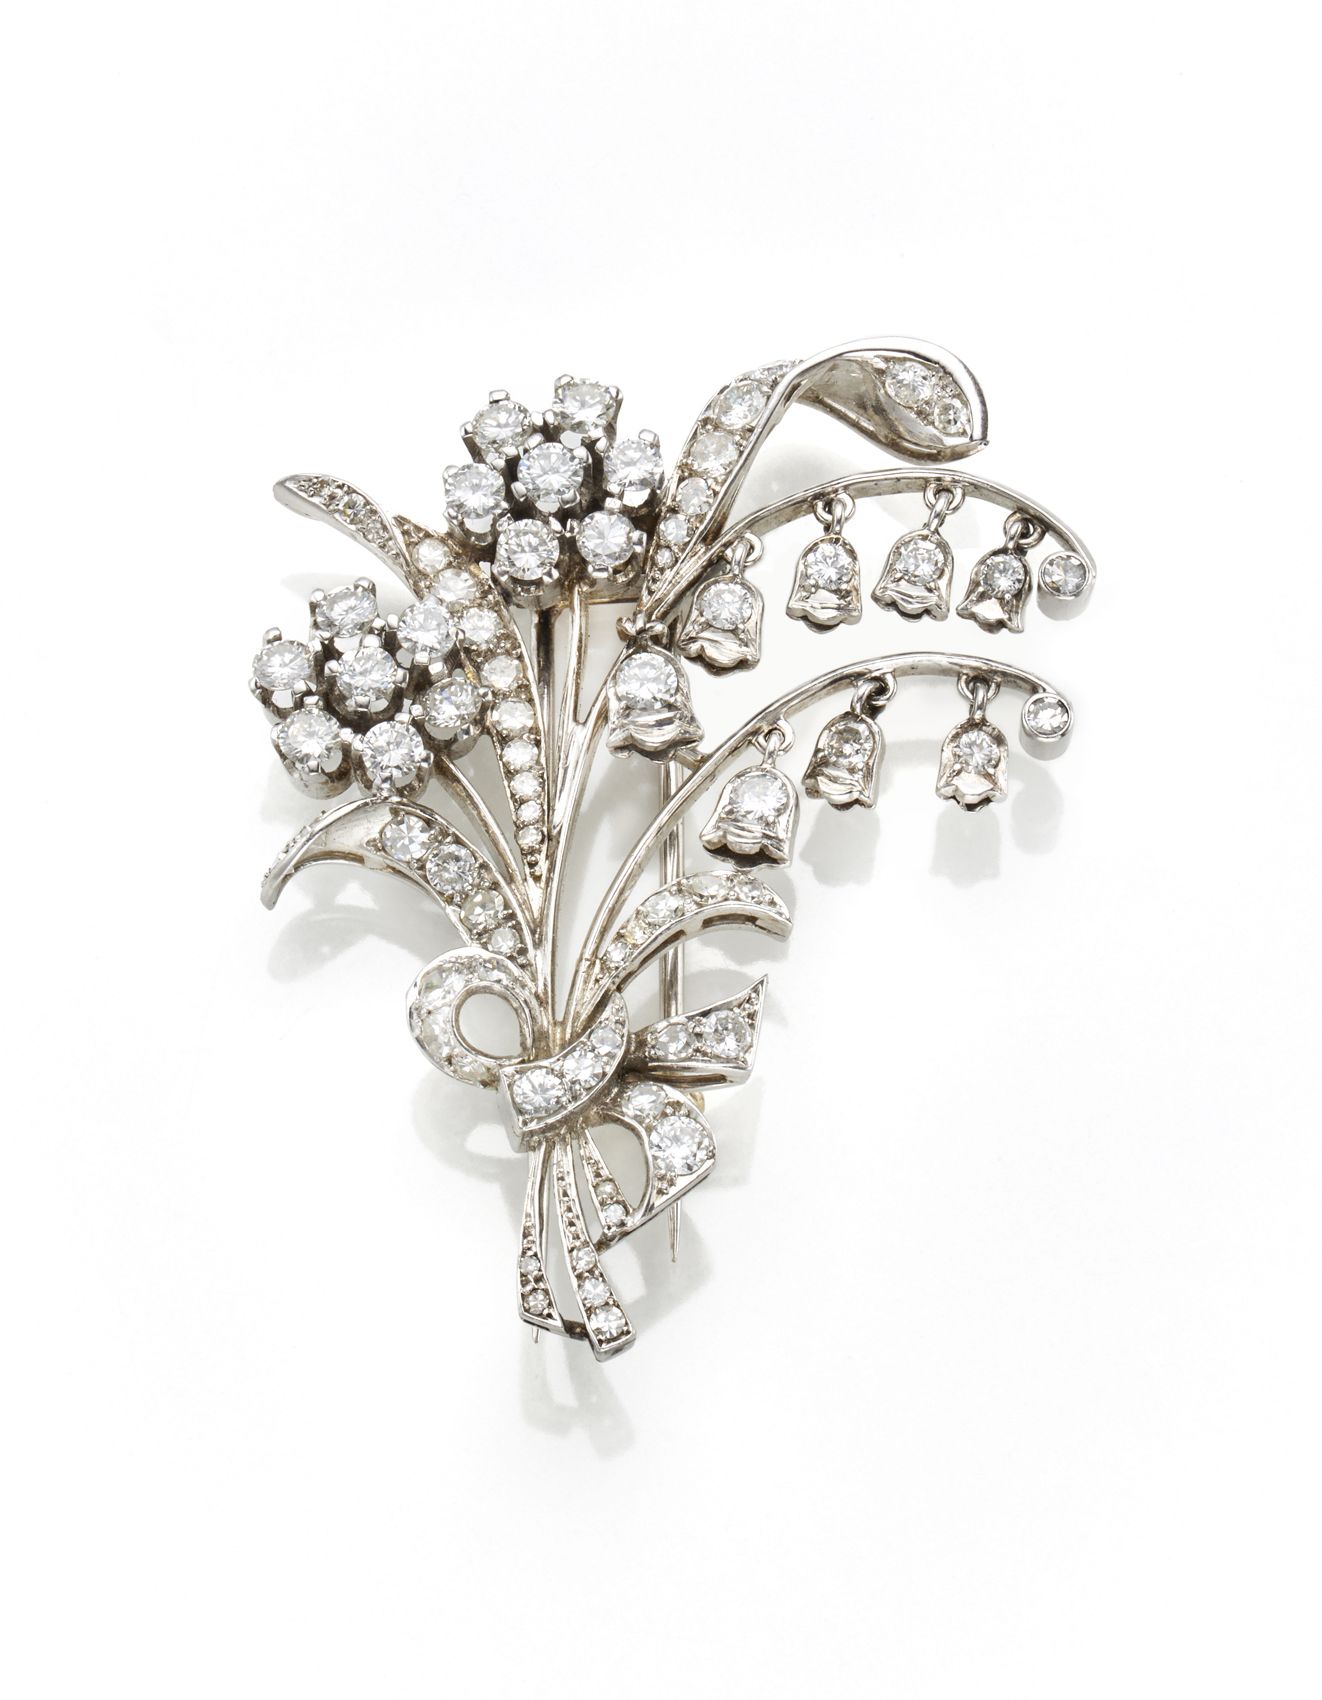 Null 白金钻石花卉胸针，设计为雏菊和风铃草吊坠，钻石均为克拉。约3.60，克重约21.73，长度约5.60厘米。

IT
Spilla floreale i&hellip;